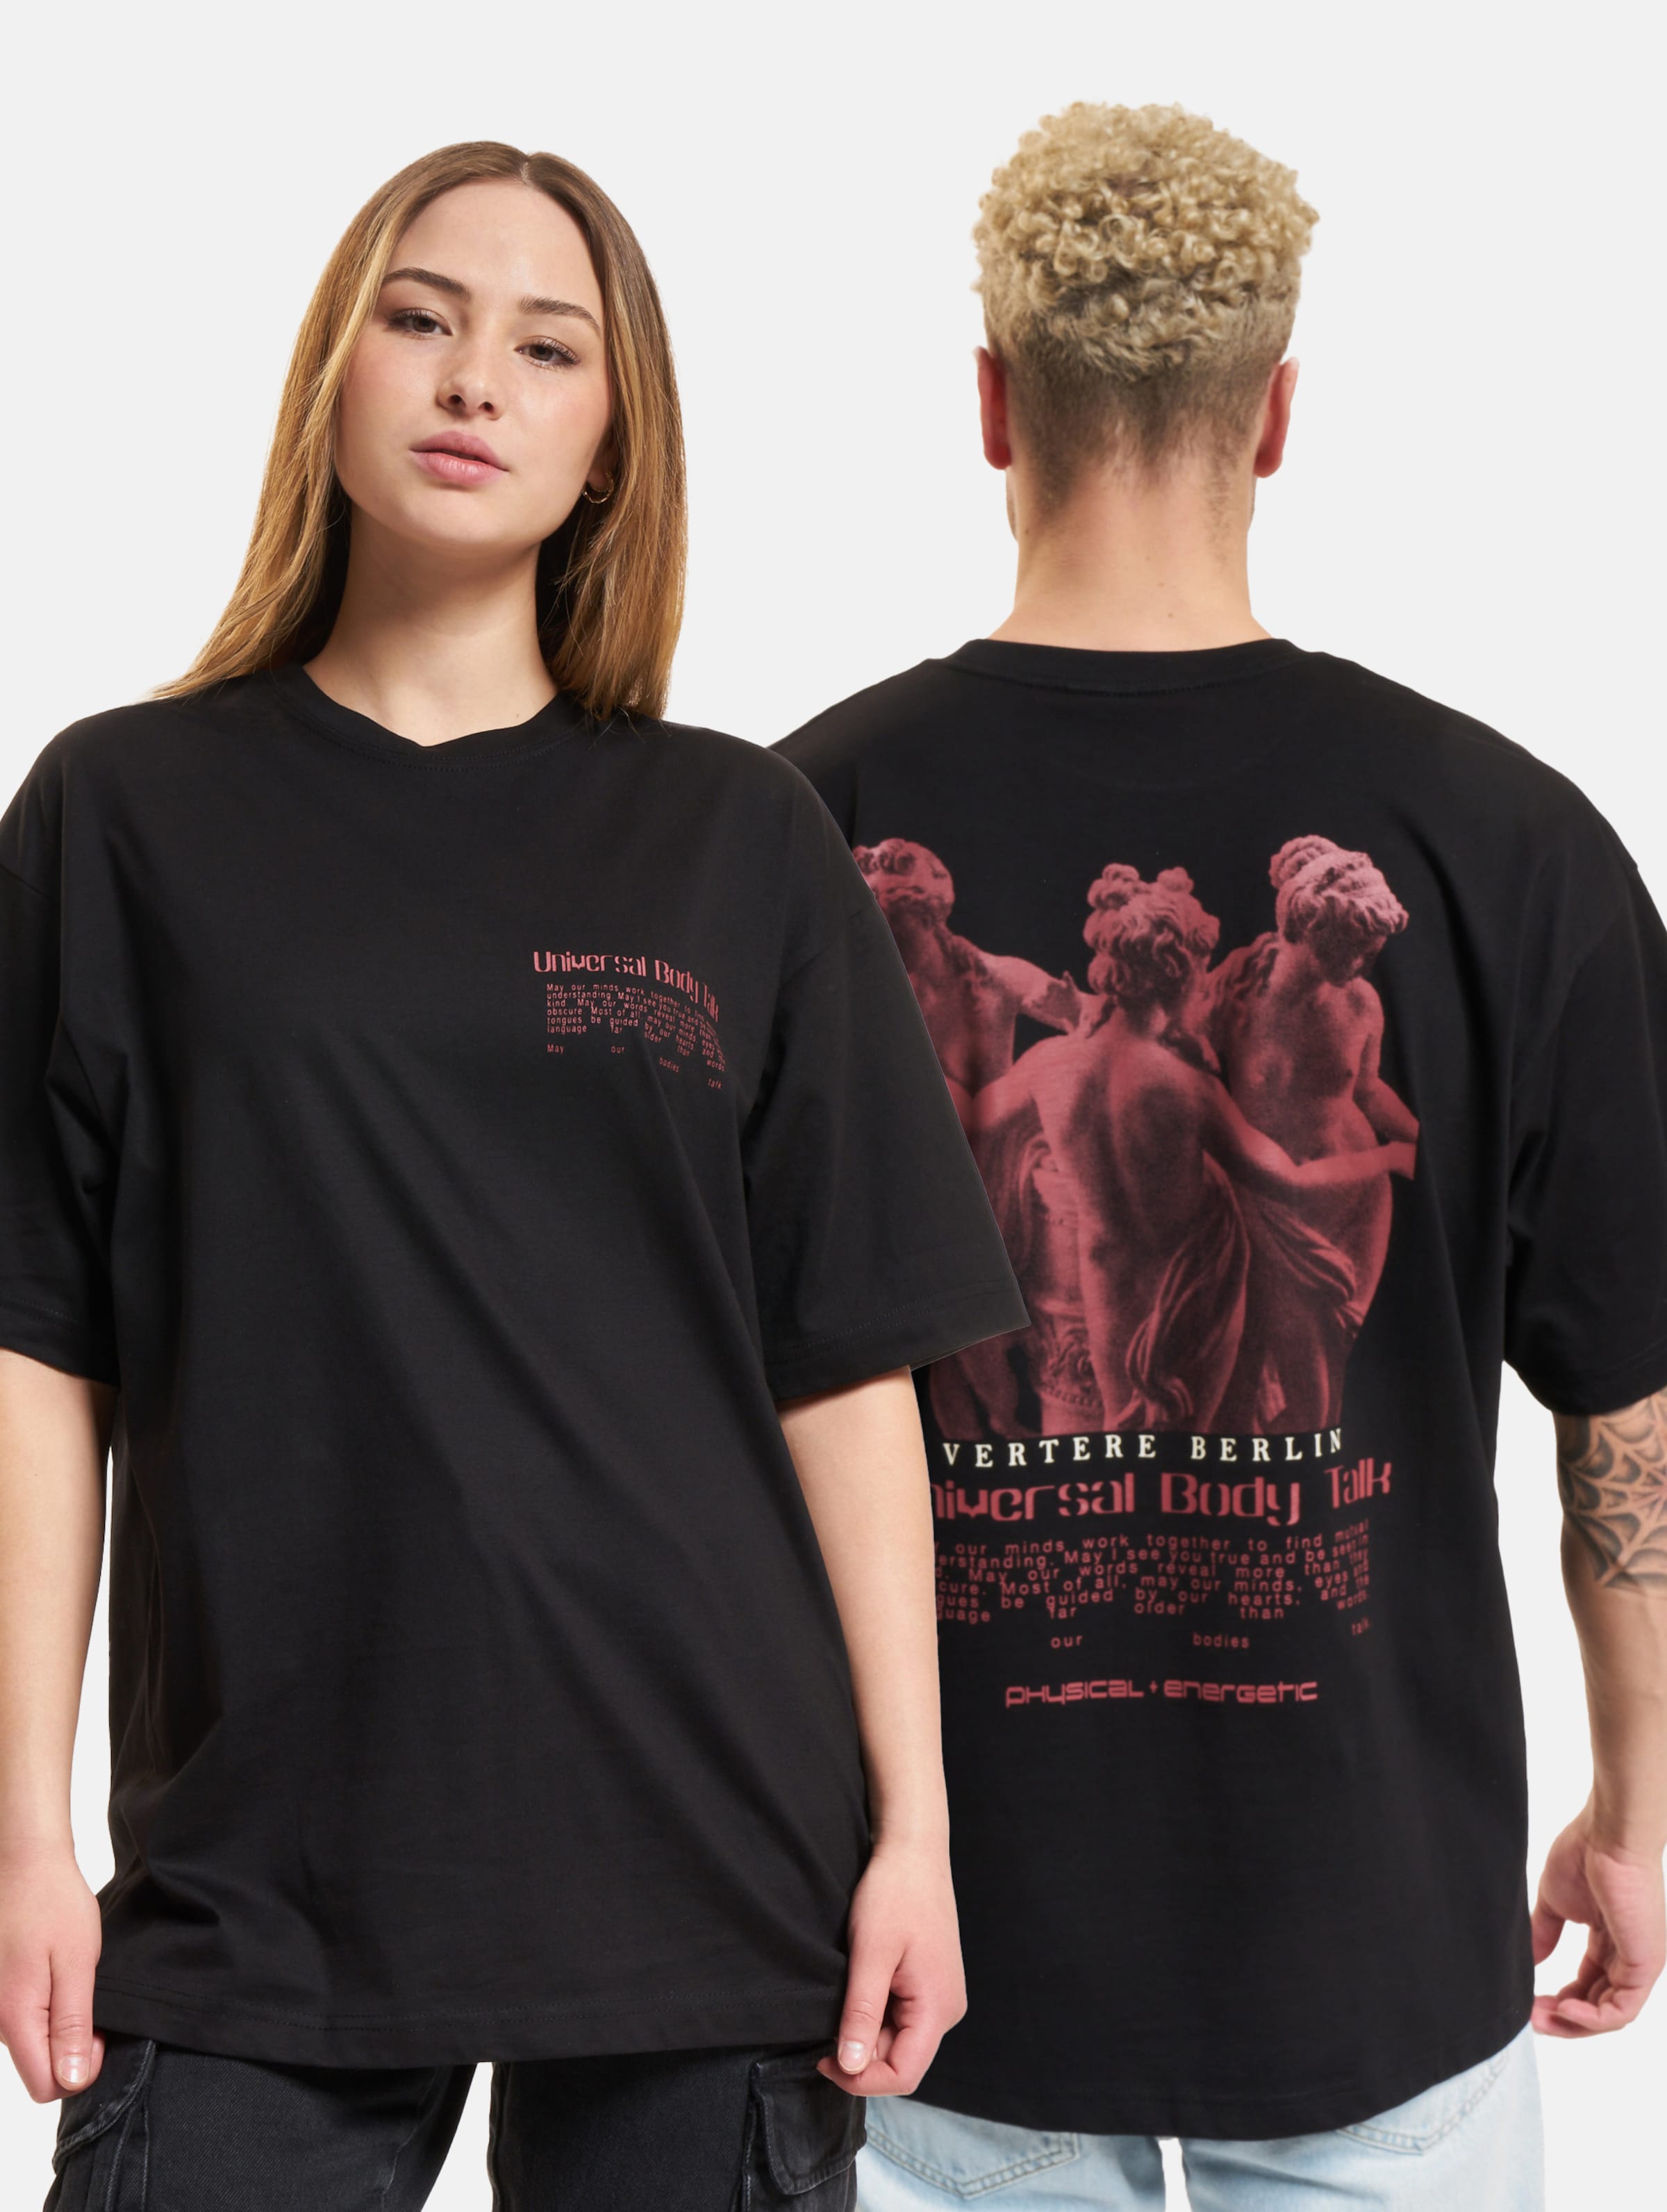 Vertere Berlin Universal Body Talk T-Shirt Frauen,Männer,Unisex op kleur zwart, Maat M